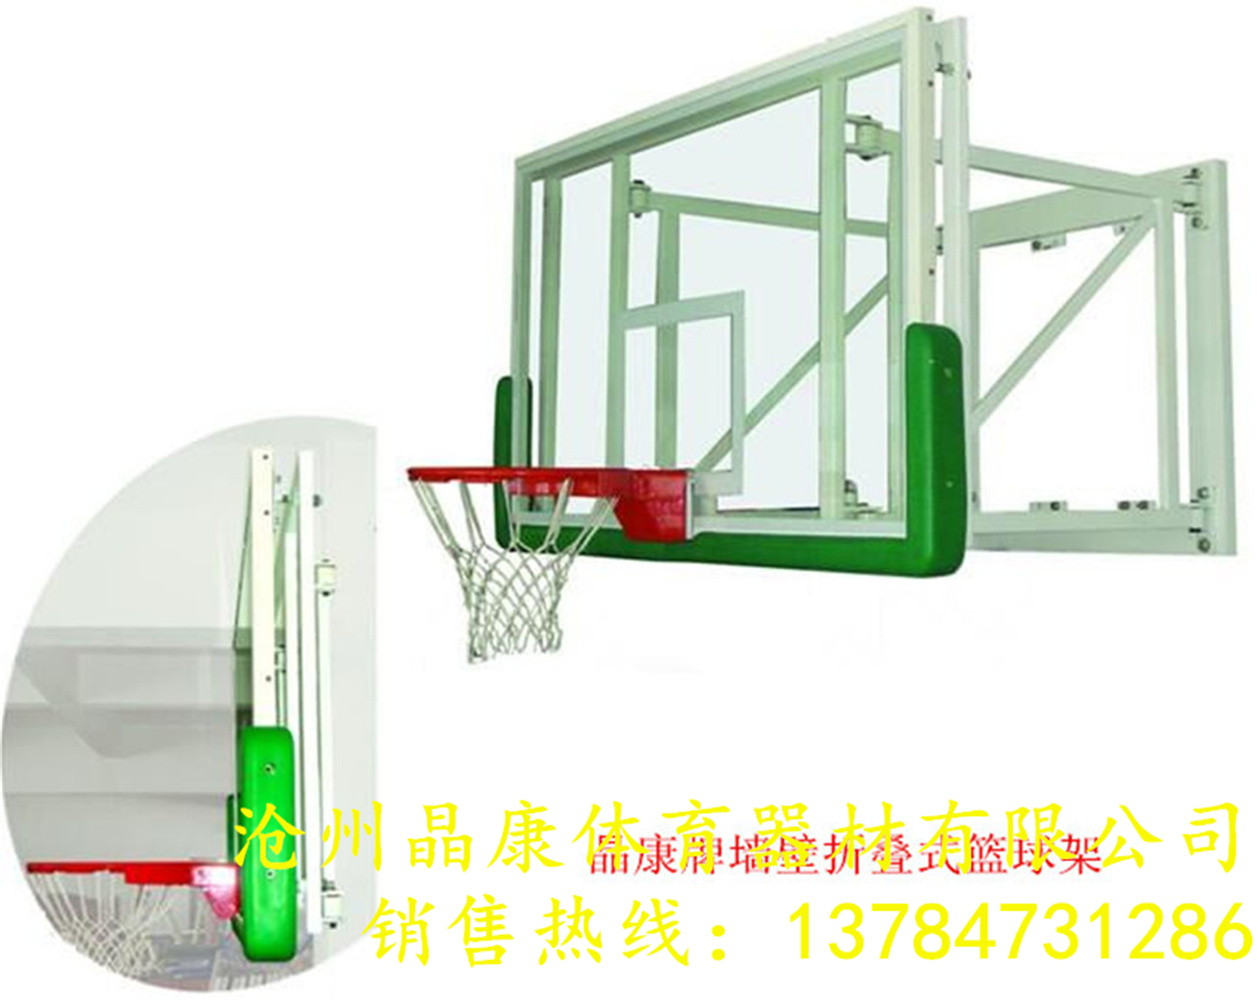 晶康牌配安全防爆钢化玻璃篮球板升降篮球架性能良好墙壁式篮球架厂家实地安装图片